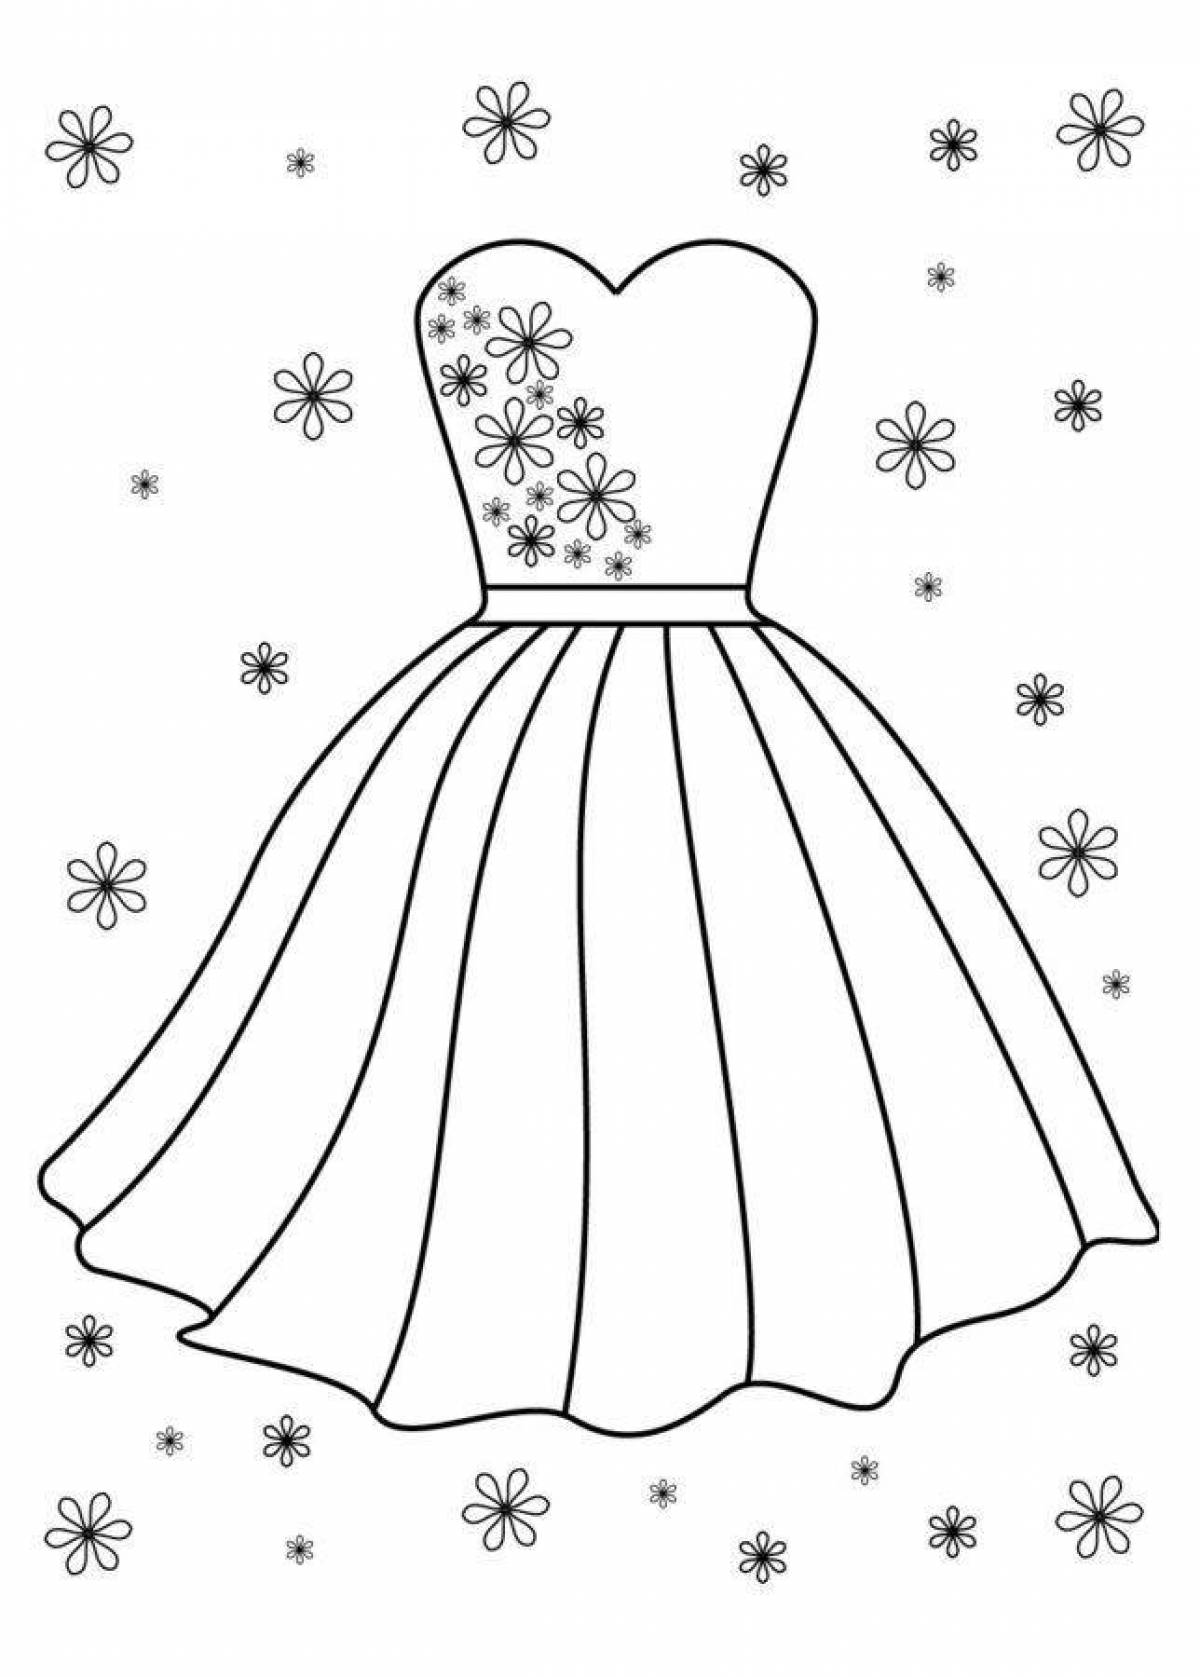 Раскраска «ослепительное платье» для детей 3-4 лет